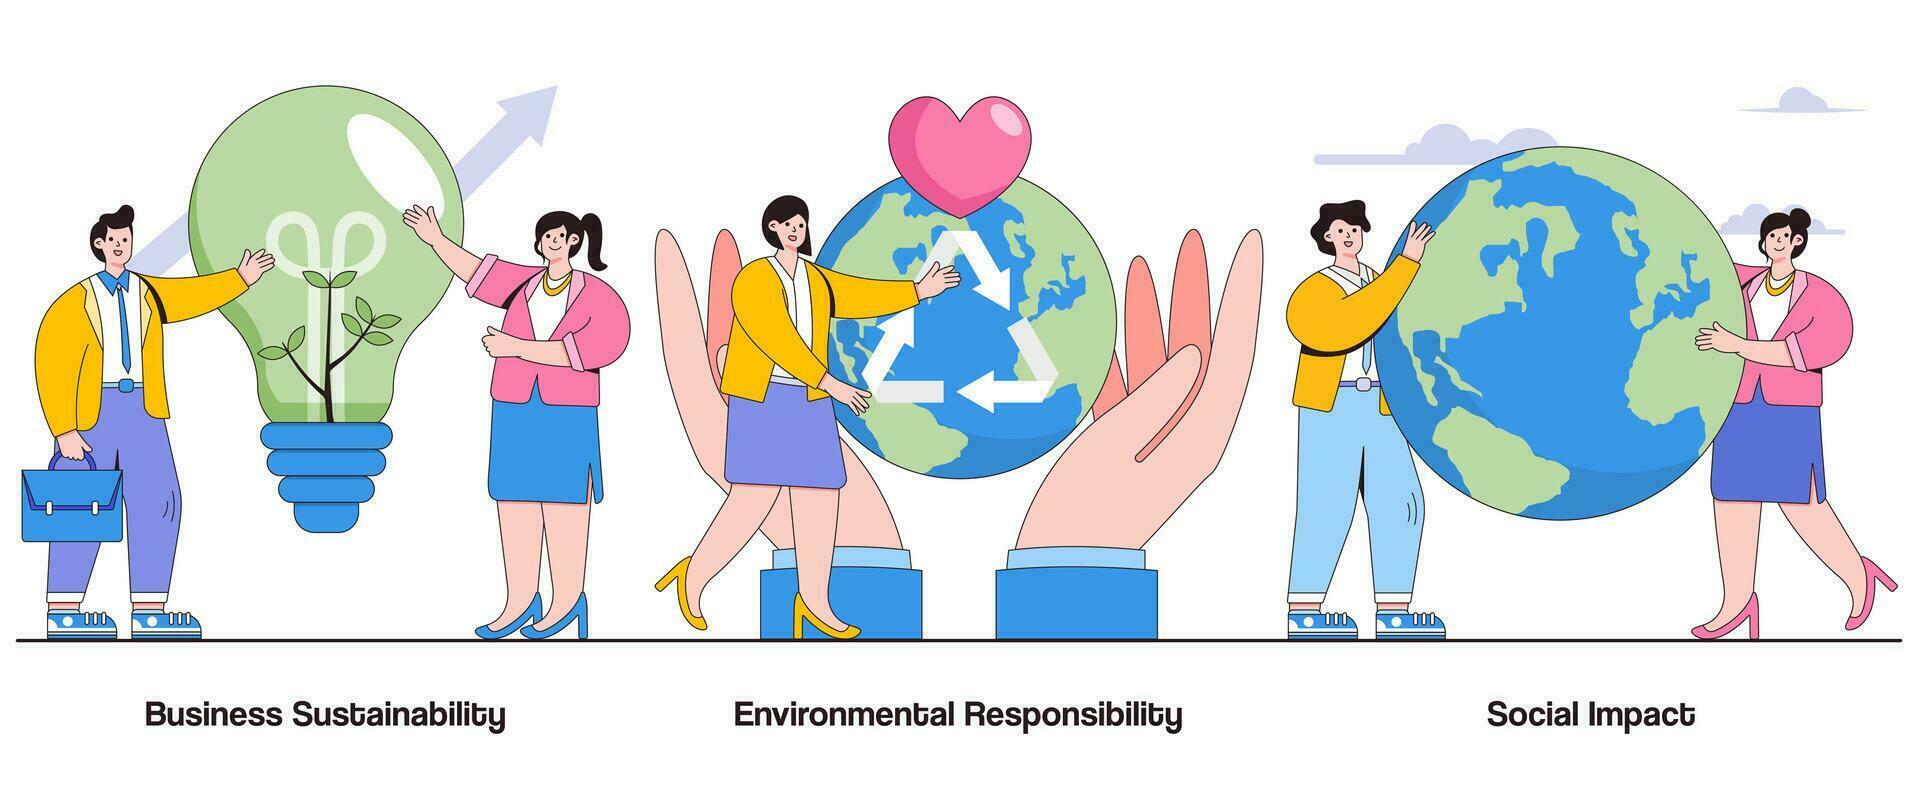 attività commerciale sostenibilità, ambientale responsabilità, sociale urto concetto con carattere. sostenibile attività commerciale pratiche astratto vettore illustrazione impostare. eco-friendly iniziative metafora